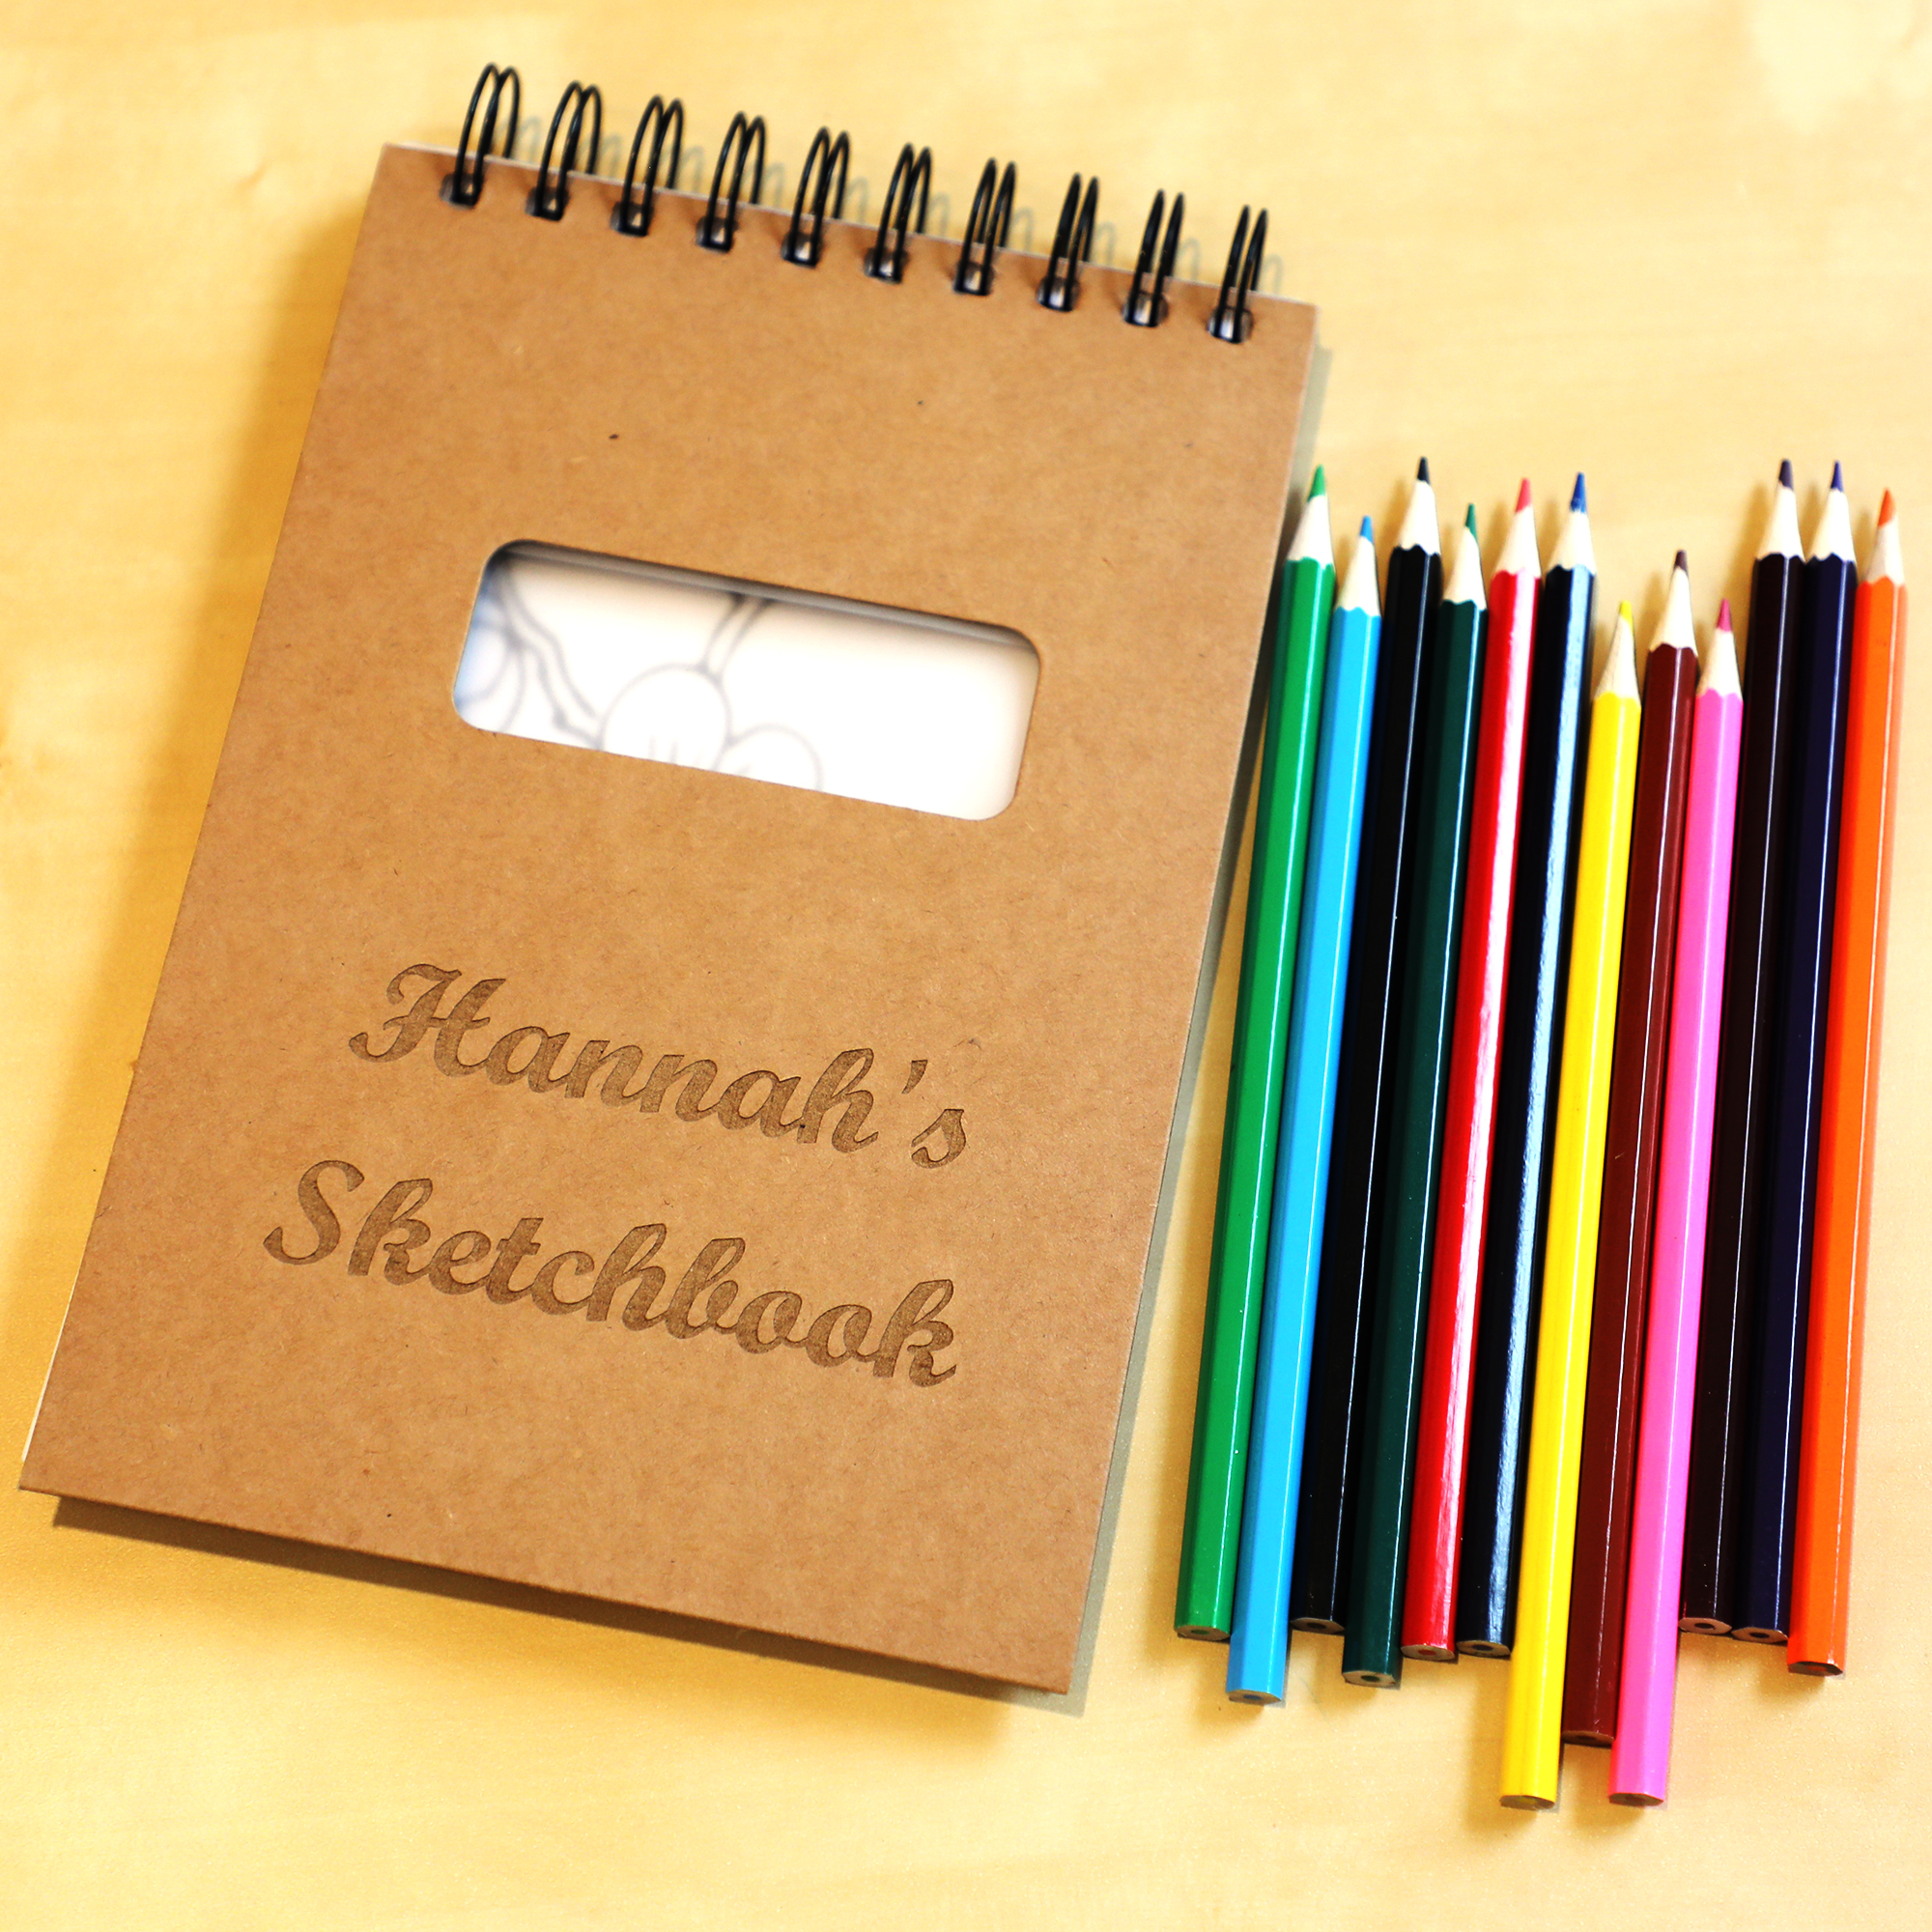 Sketchbook For Kids: SHARK DRAWING PAD large sketch book, sketch